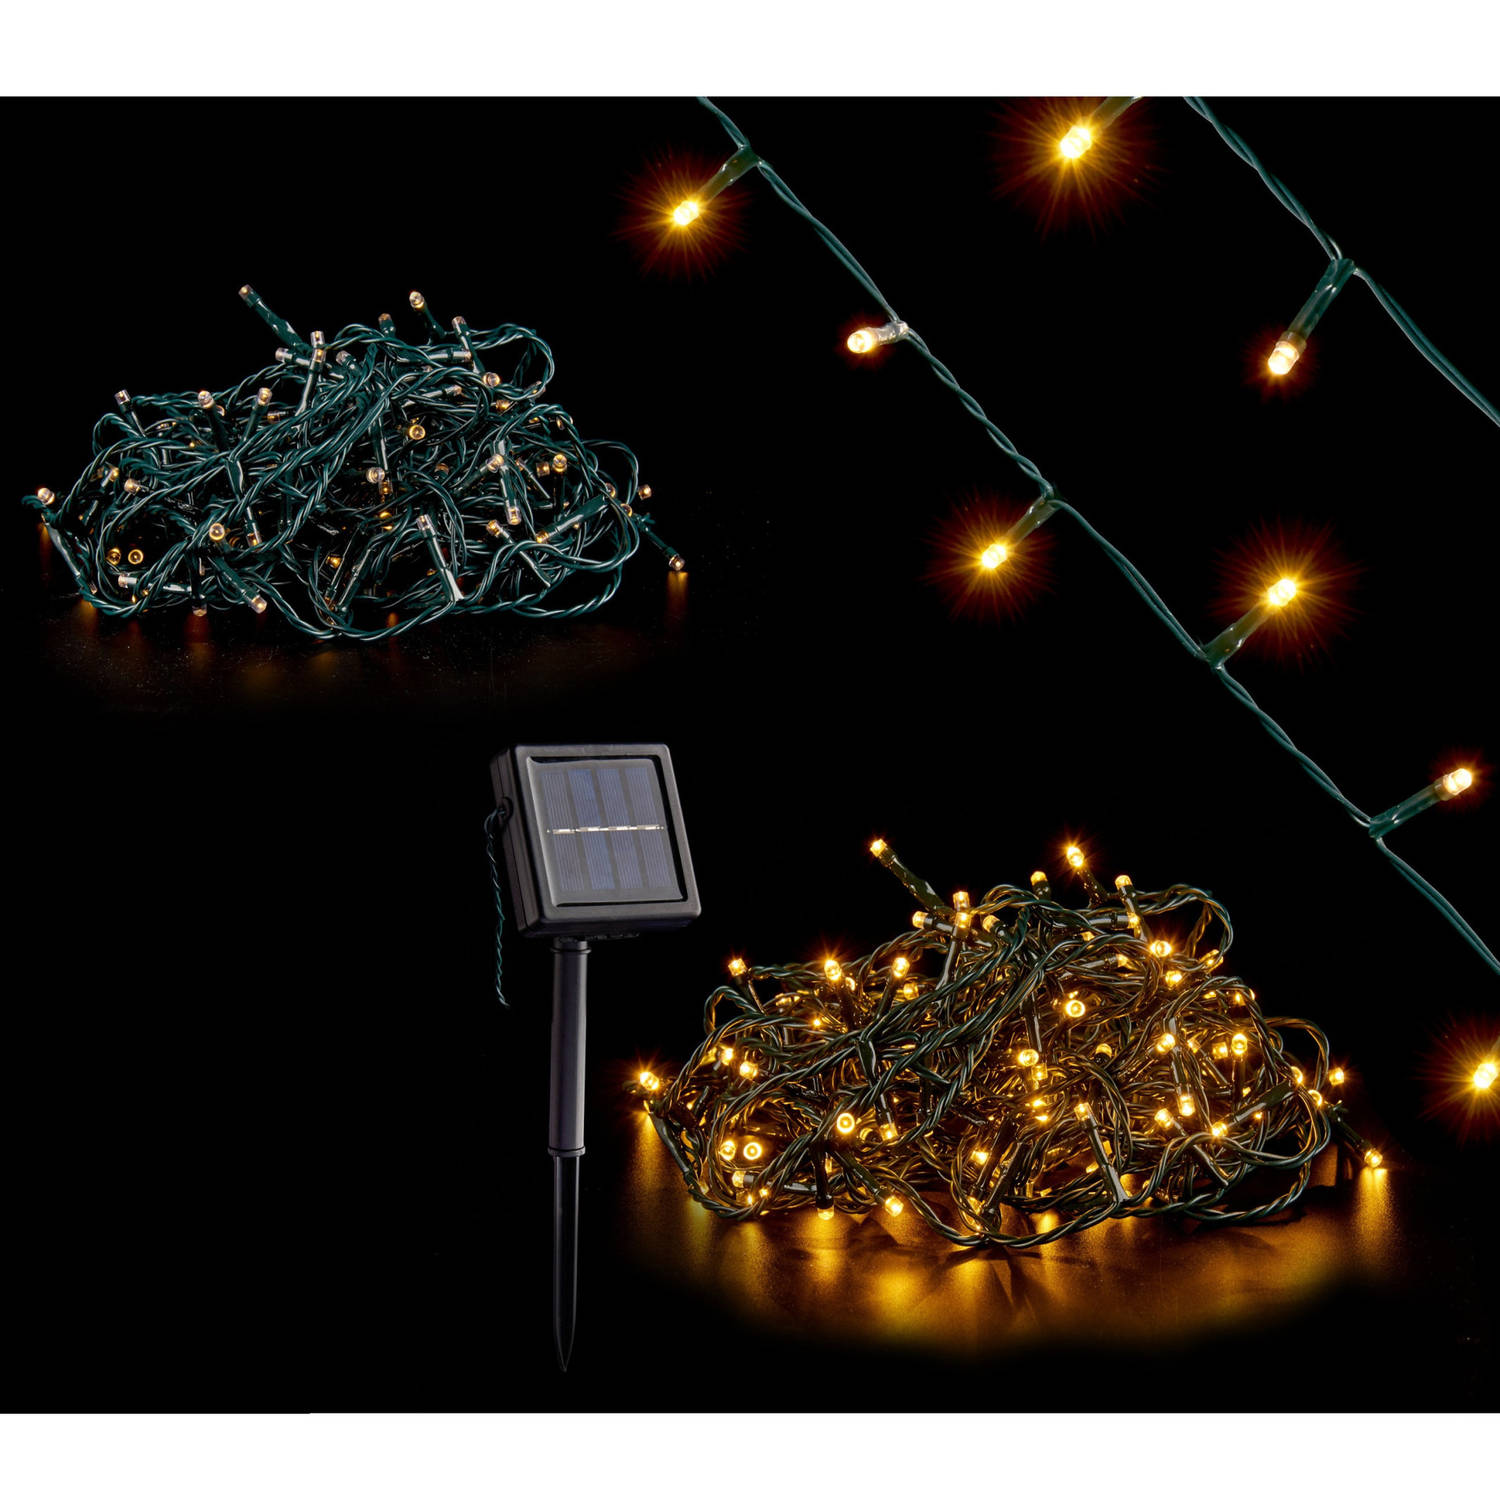 Kerstverlichting/party Lights 200 Warm Witte Led Lampjes Op Zonne-energie - Kerstverlichting Kerstboom